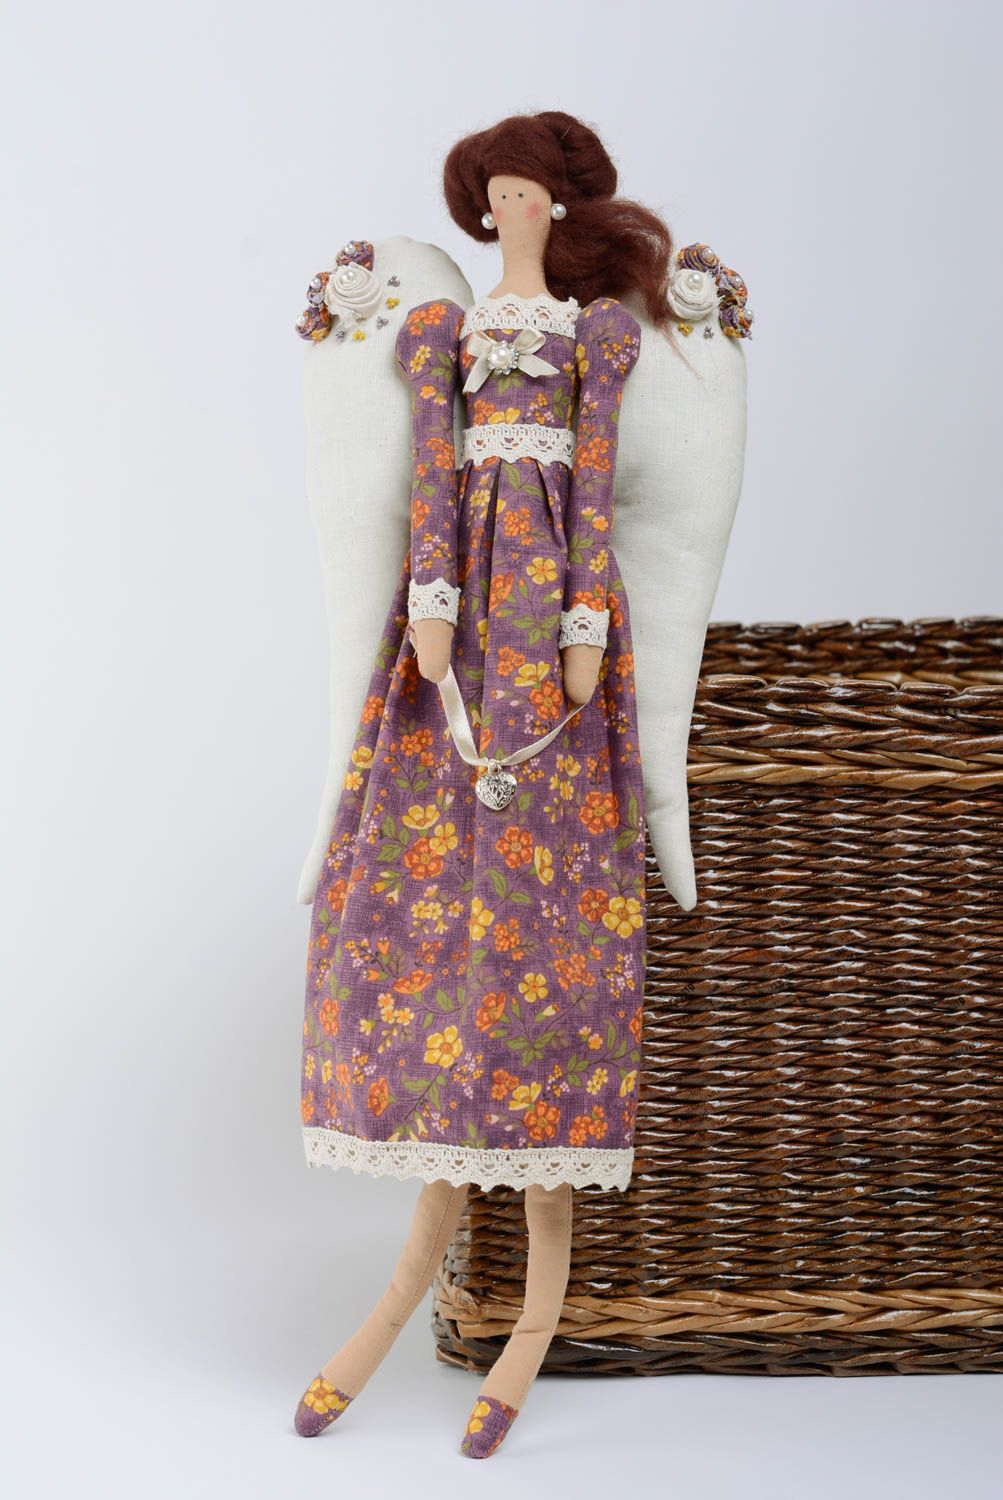 Handmade schöne Puppe aus Stoff Baumwolle für Kinder Engel Mädchen  foto 1